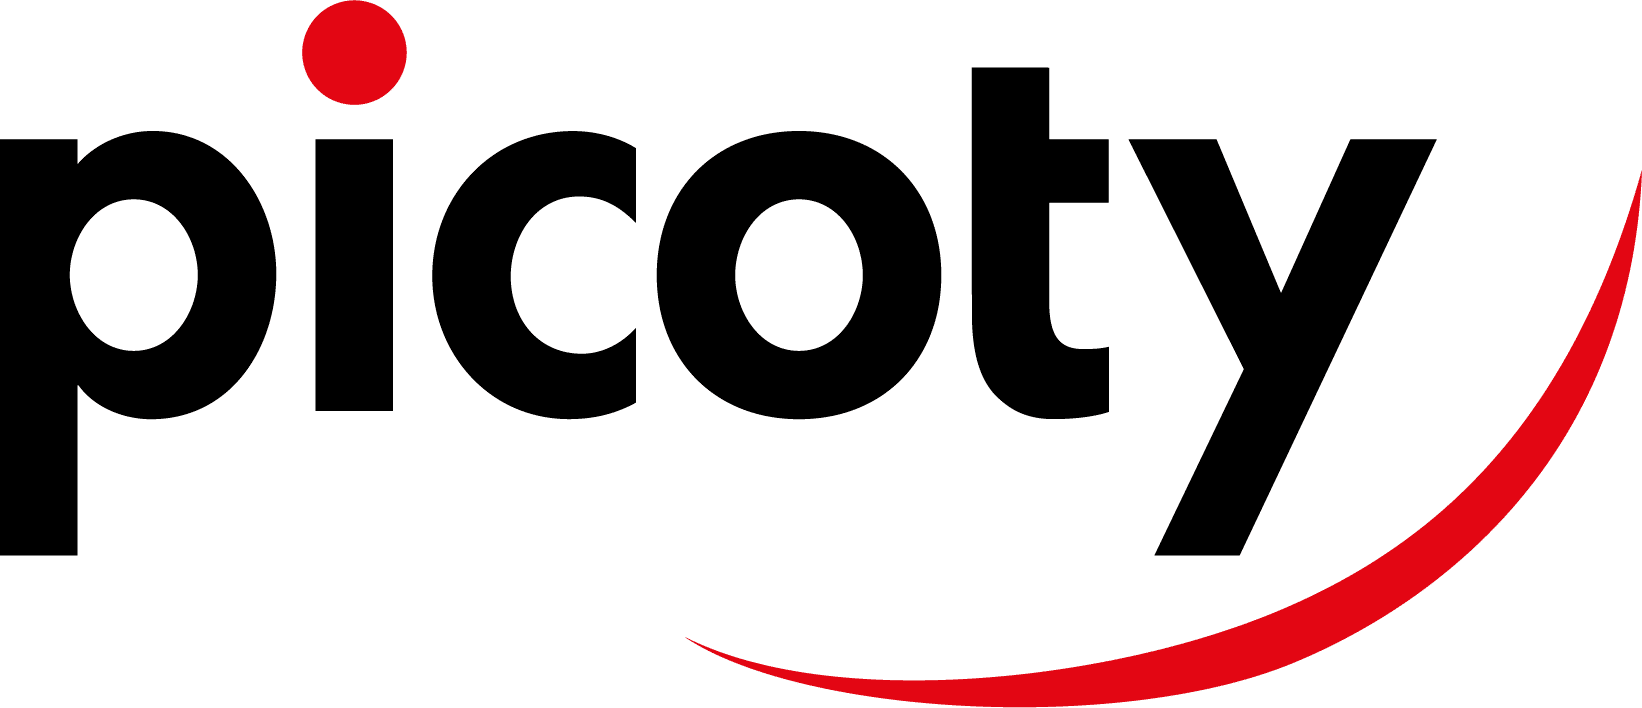 Picoty : Logo